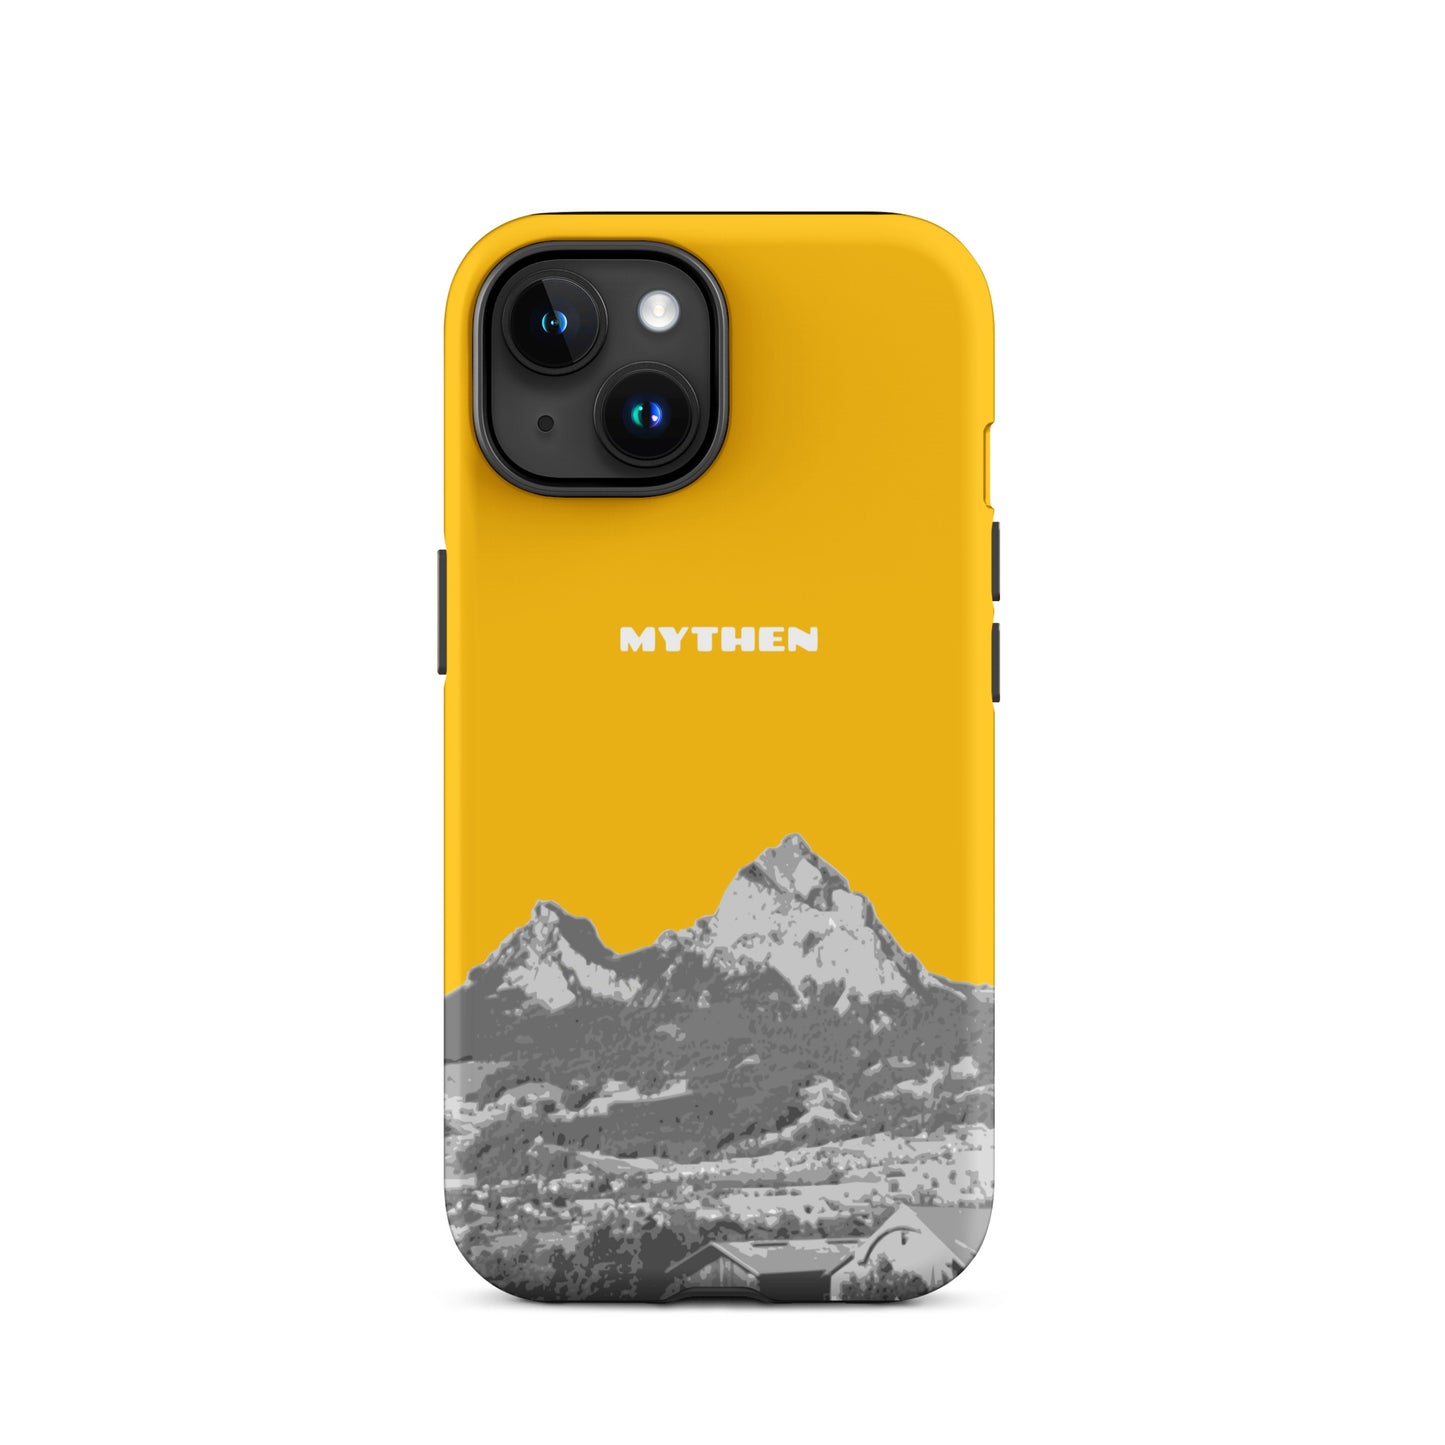 Hülle für das iPhone 15 von Apple in der Farbe Goldgelb, dass den Grossen Mythen und den Kleinen Mythen bei Schwyz zeigt. 